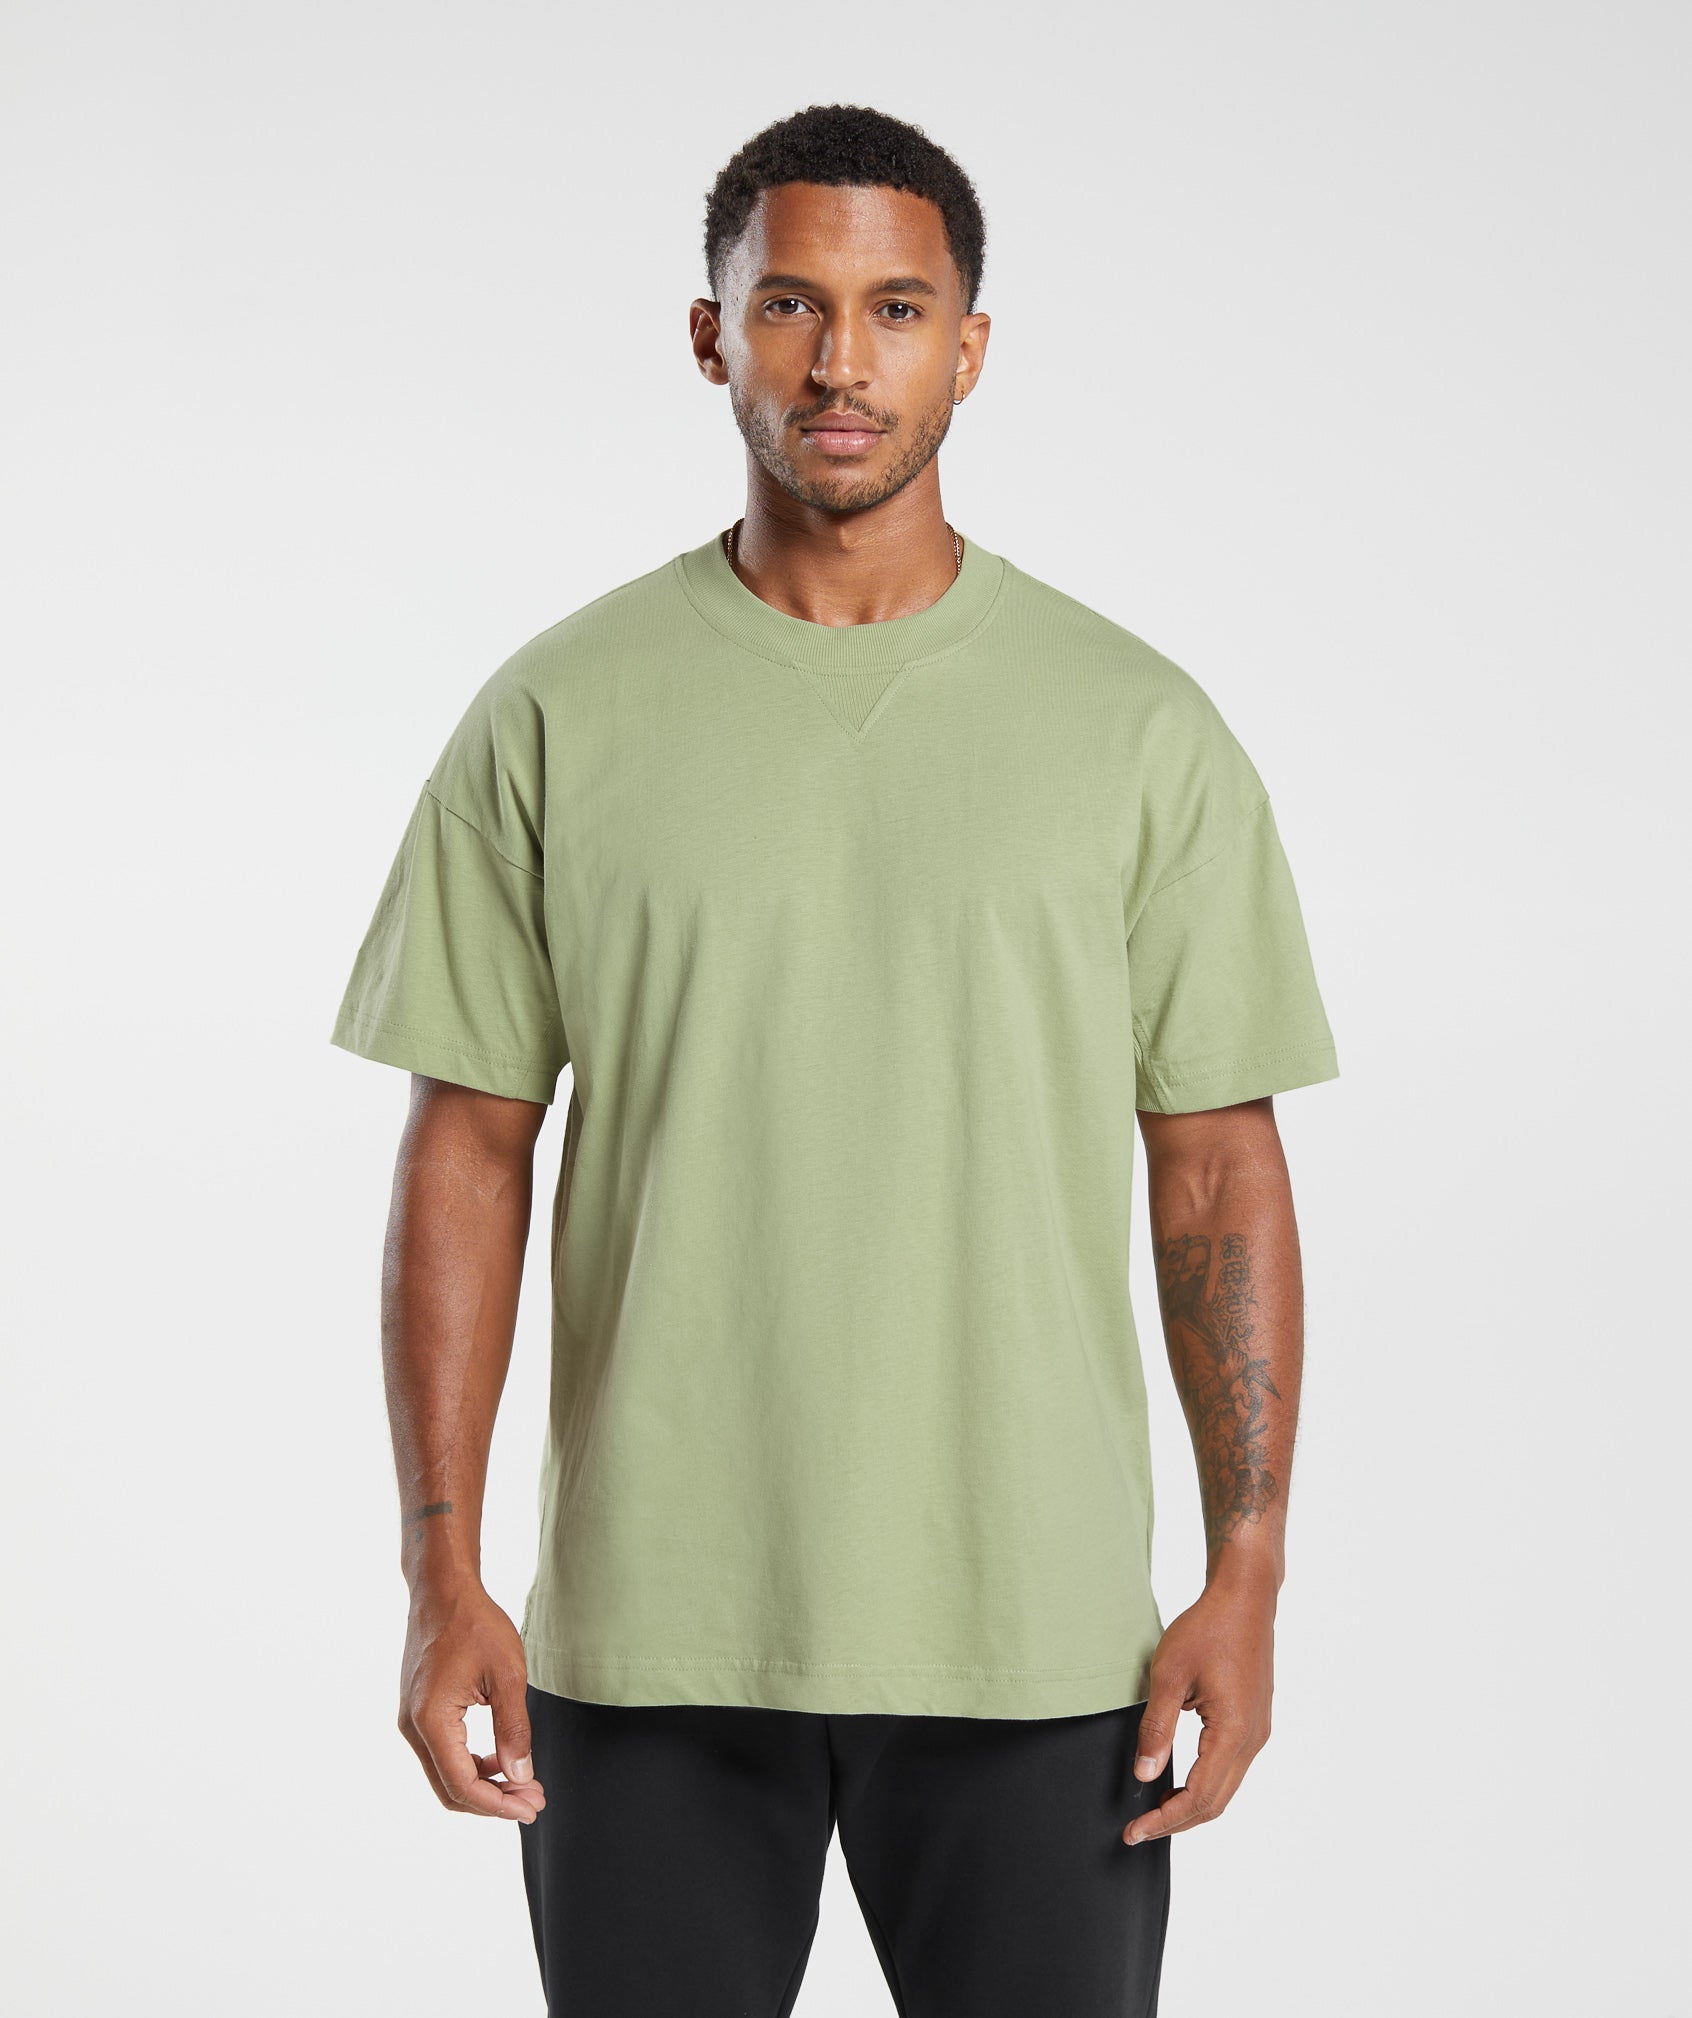 Rest Day Essentials T-Shirt in Light Sage Green